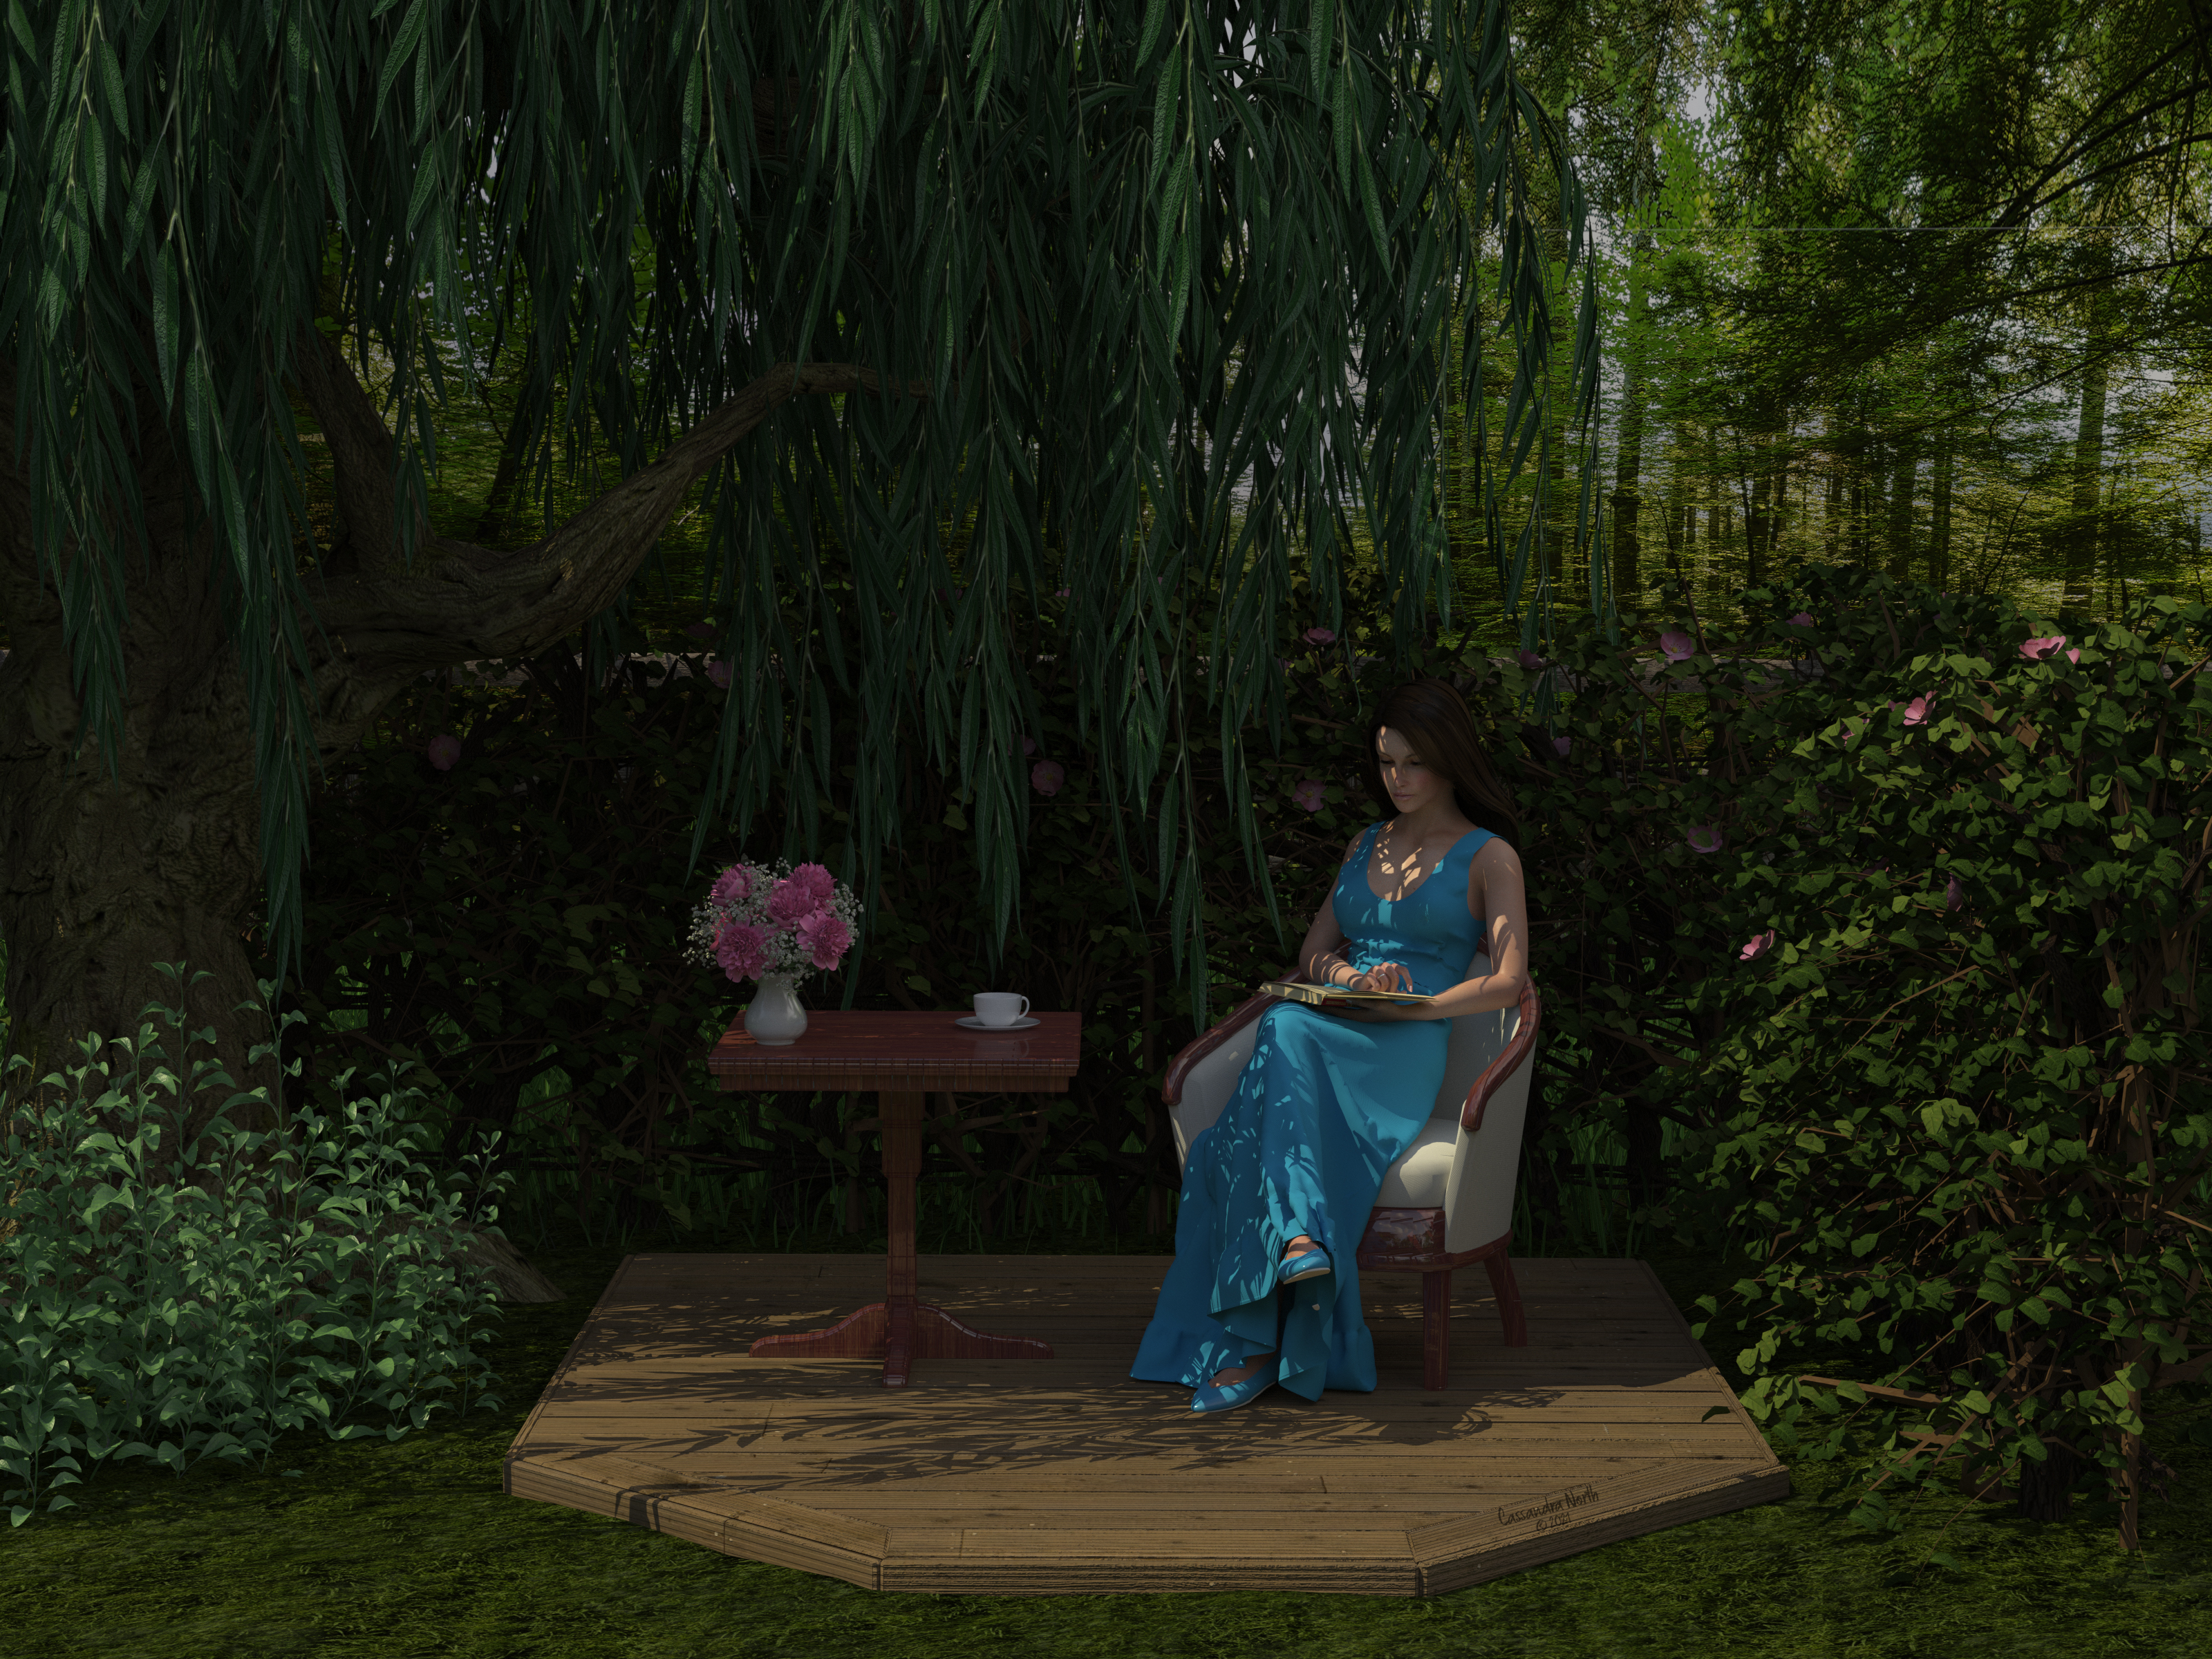 Lexi in the garden nook